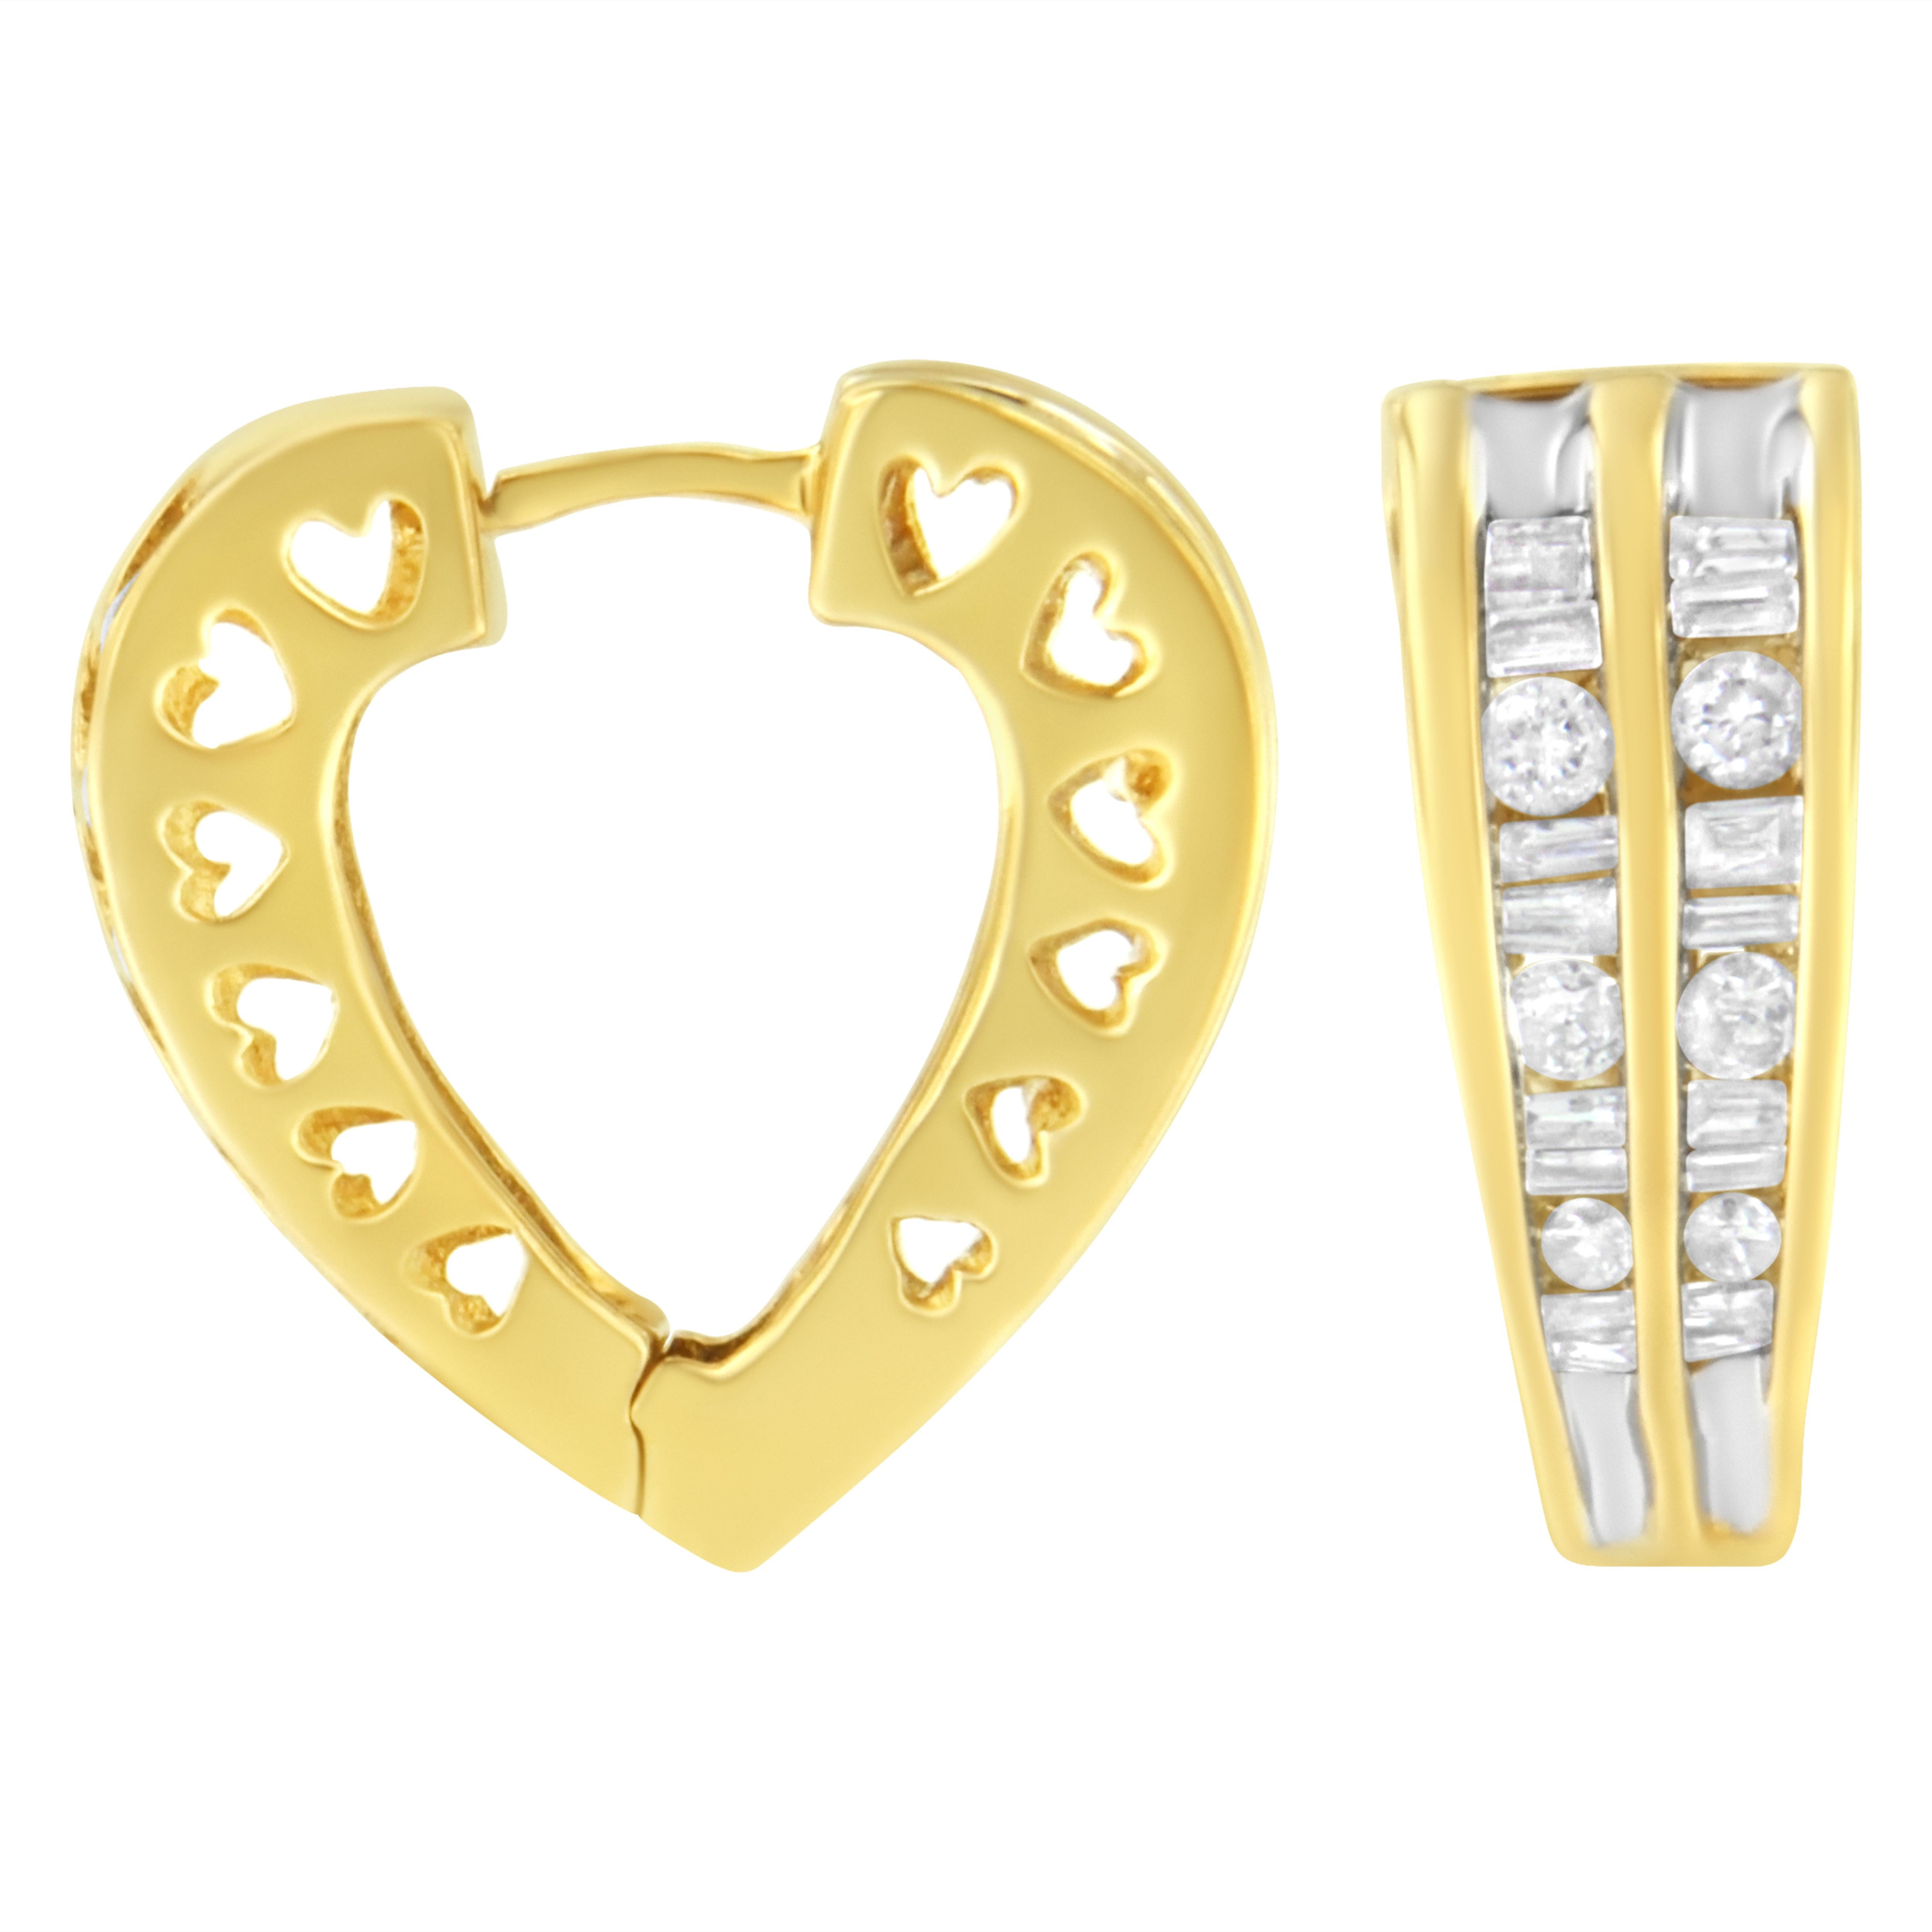 Diese zierlichen und trendigen Ohrringe mit Diamanten sind das perfekte Geschenk für jede geliebte Person. Dieses schöne Stück aus 14-karätigem Gelb- und Weißgold hat herzförmige Motive in den Sockel geätzt. Mit einem Gesamtdiamantengewicht von 1